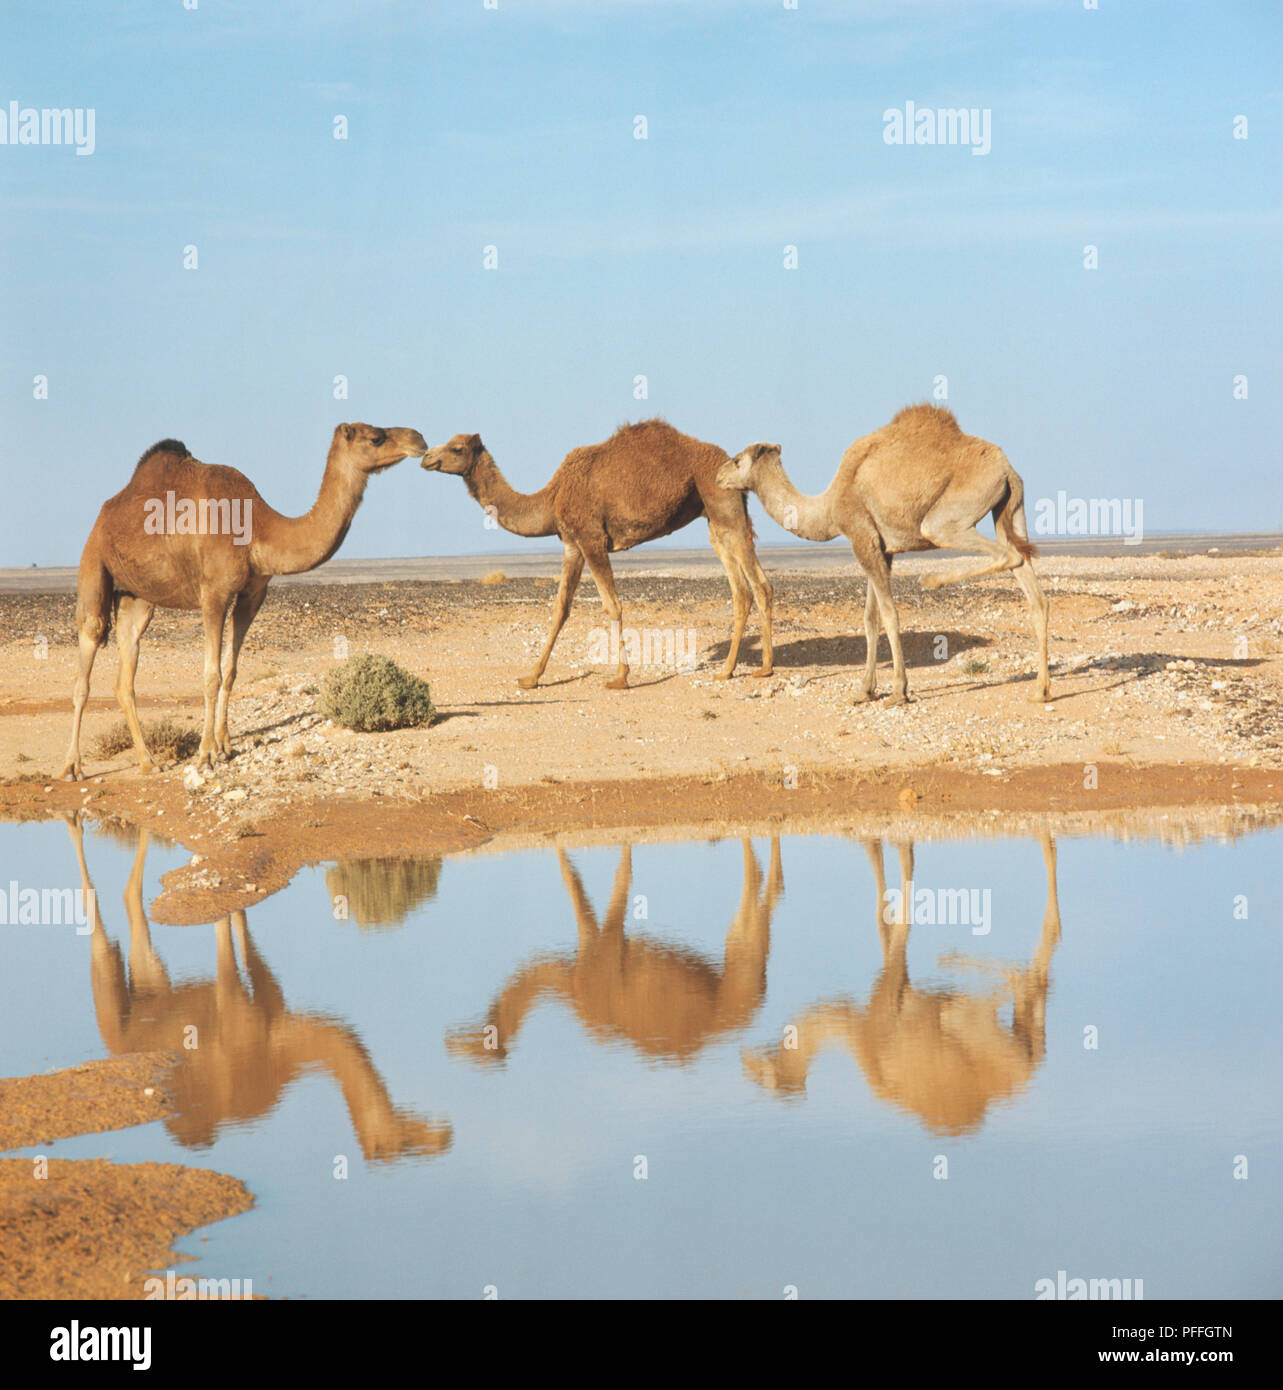 Vista laterale di tre cammelli in corrispondenza di un foro di irrigazione, Giordania, cammelli si riflette nell'acqua. Foto Stock